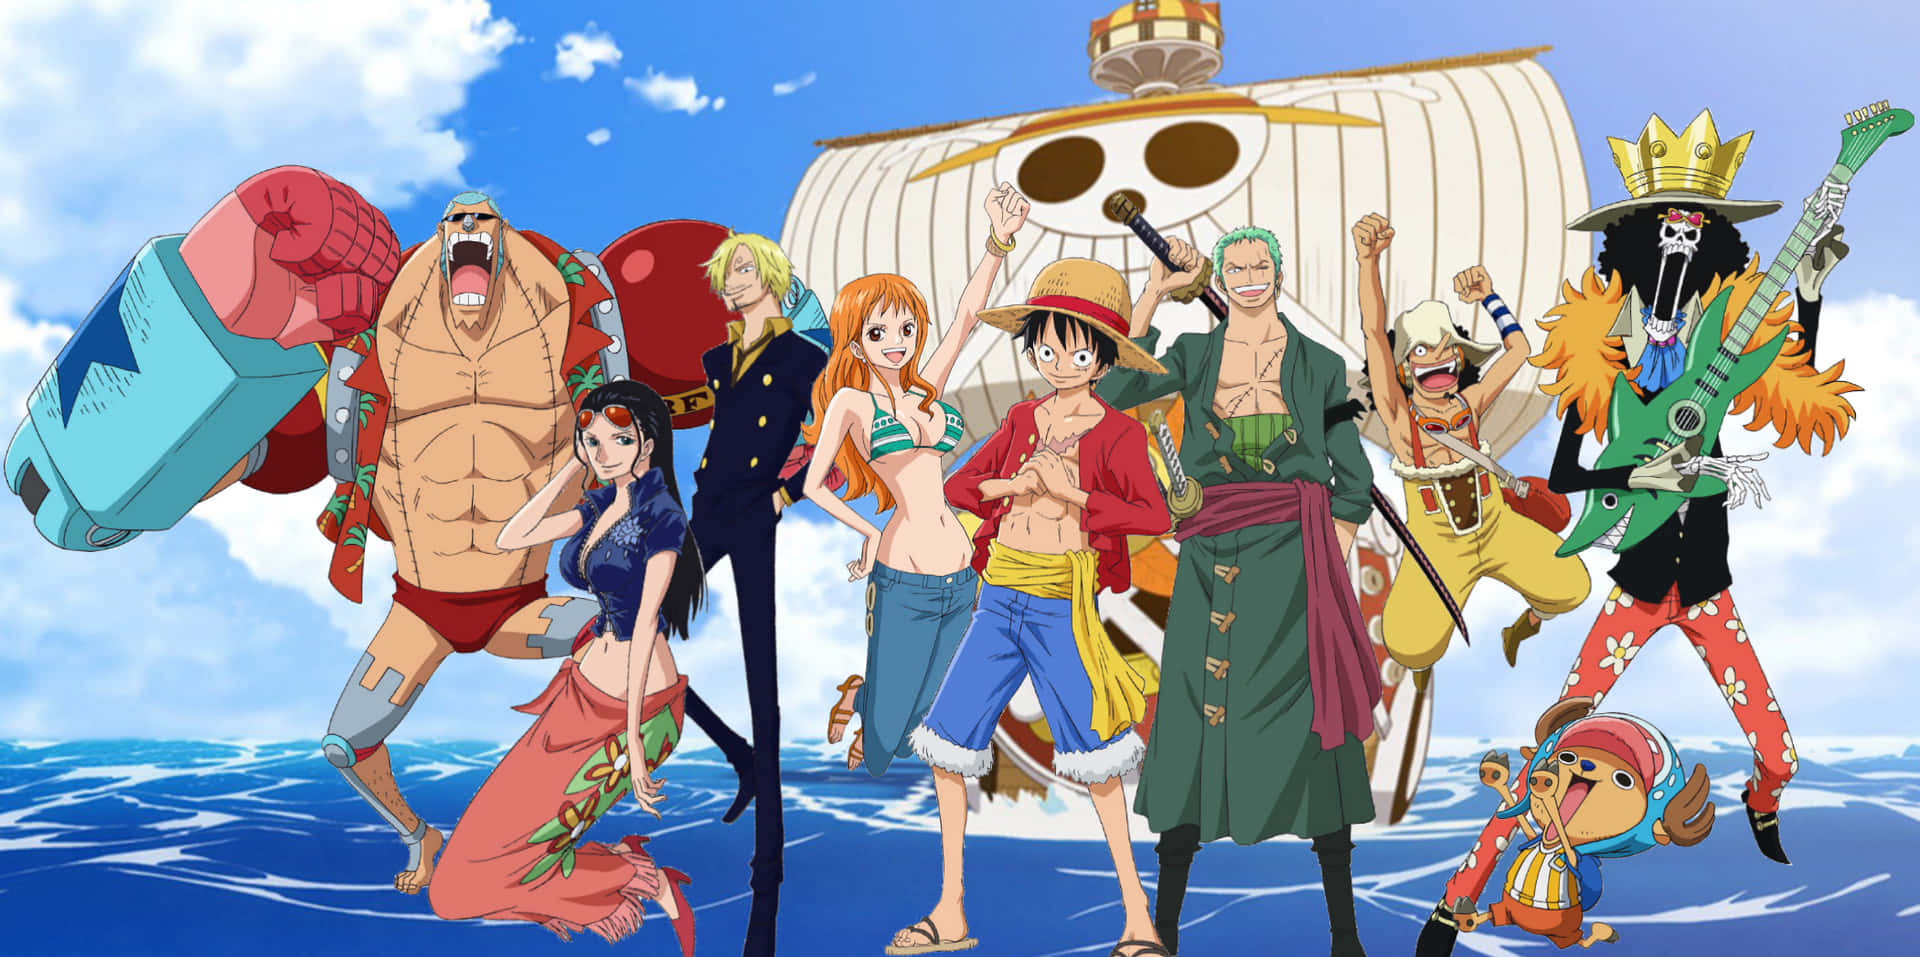 Diestrohhutpiraten Nehmen Kurs Auf Ihre Große Reise, Um Das One Piece Zu Finden! Wallpaper